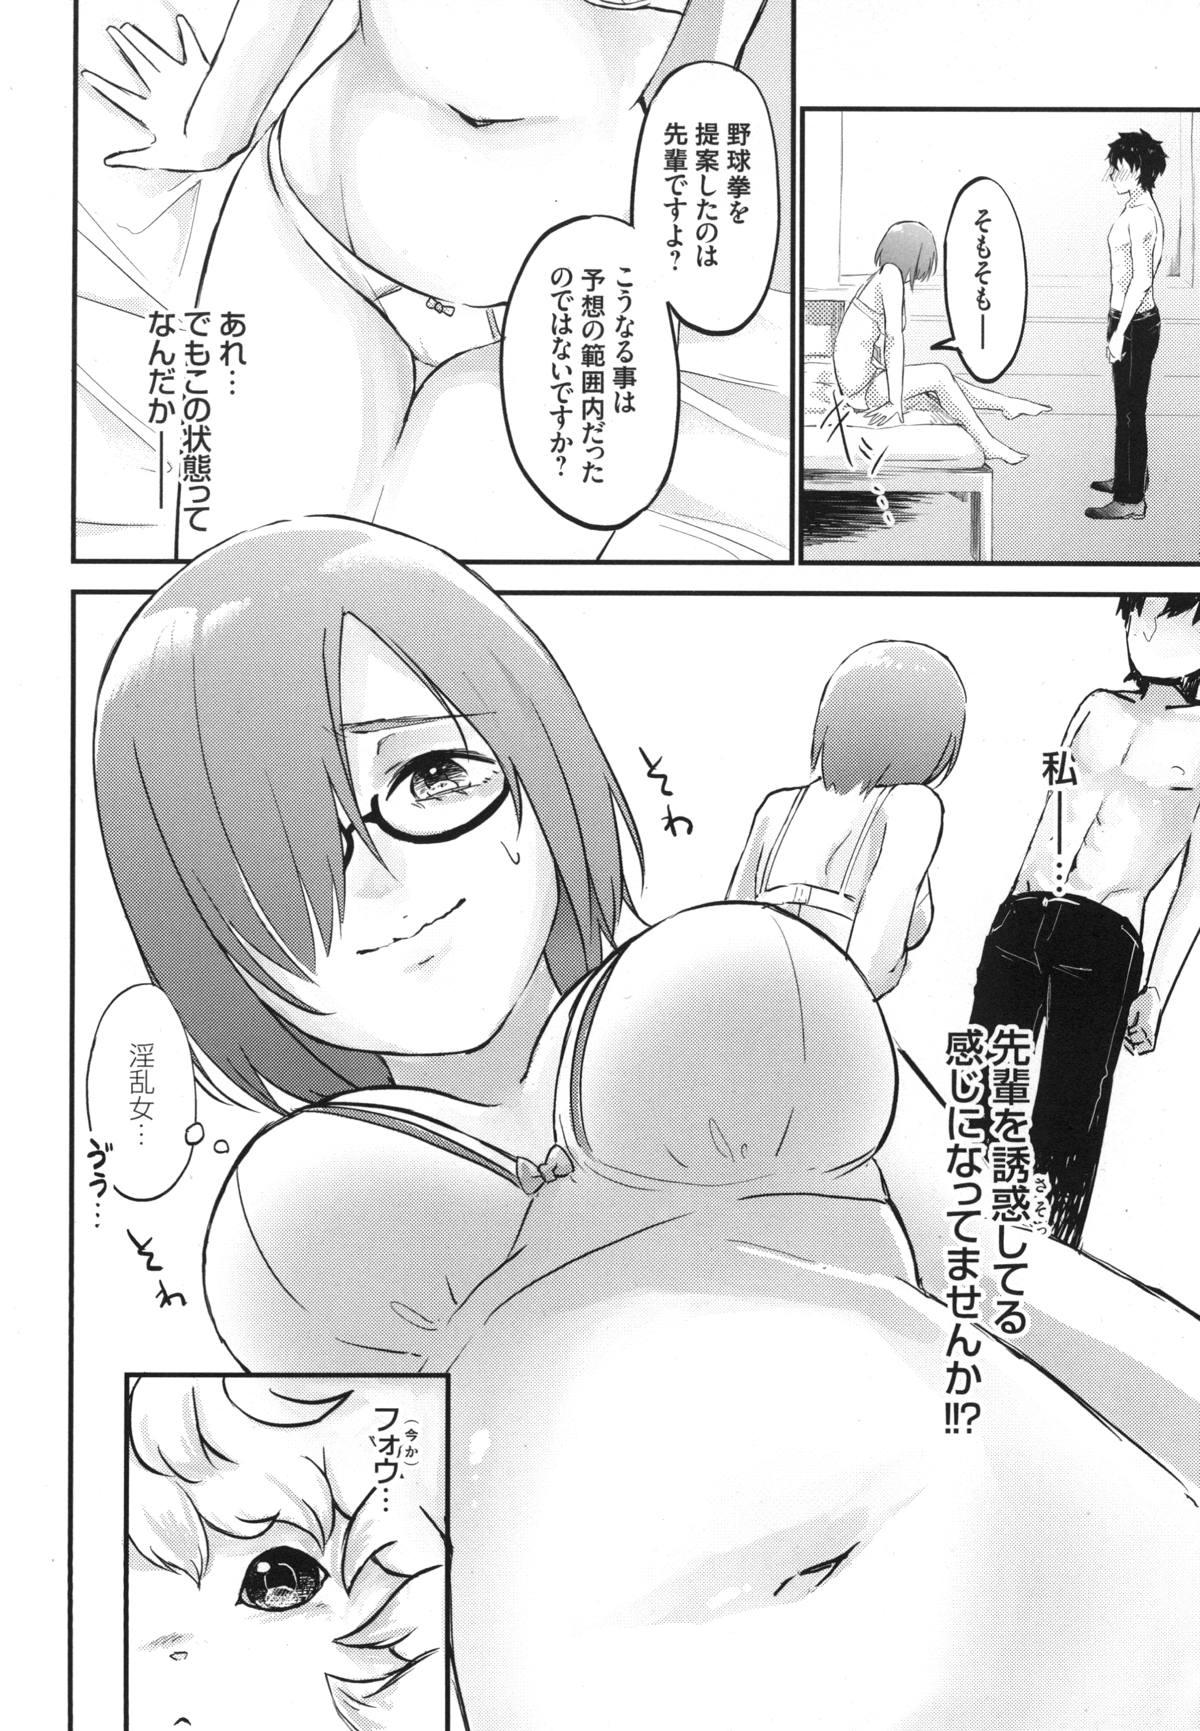 Masturbando Mash no Migite wa Saijaku desu!? - Fate grand order 18yearsold - Page 11